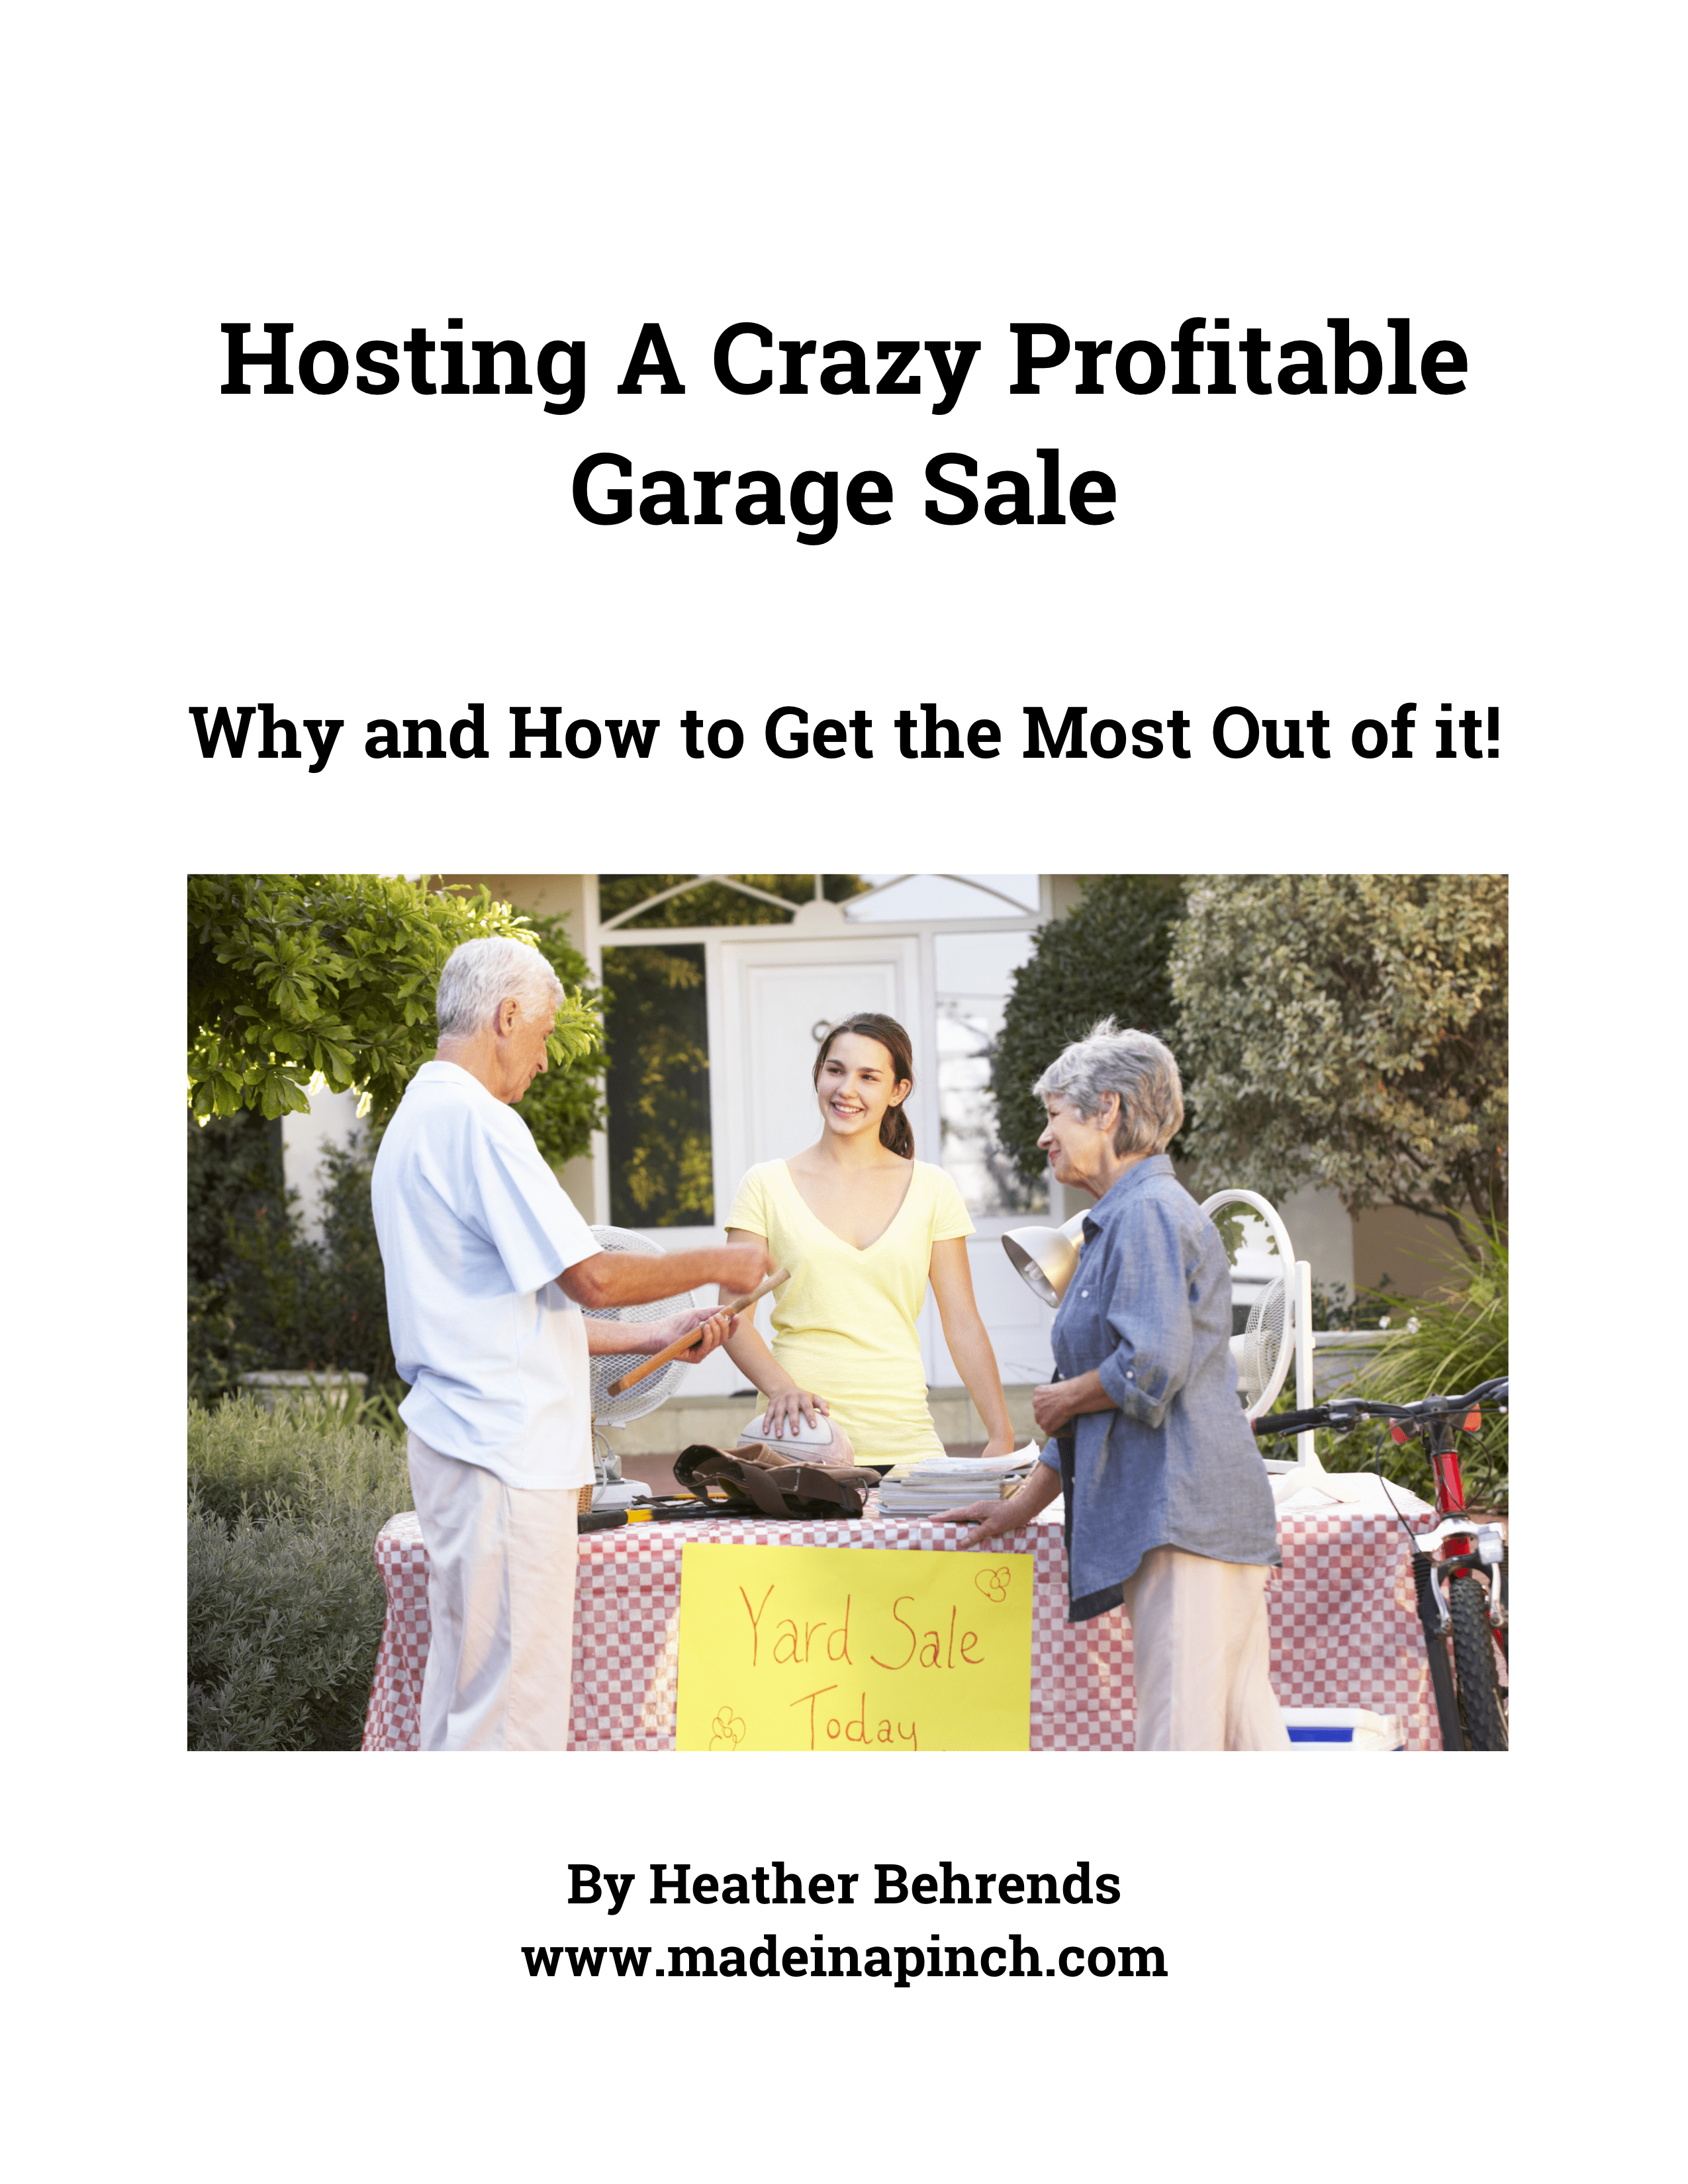 Hosting a crazy profitable garage sale ebook cover